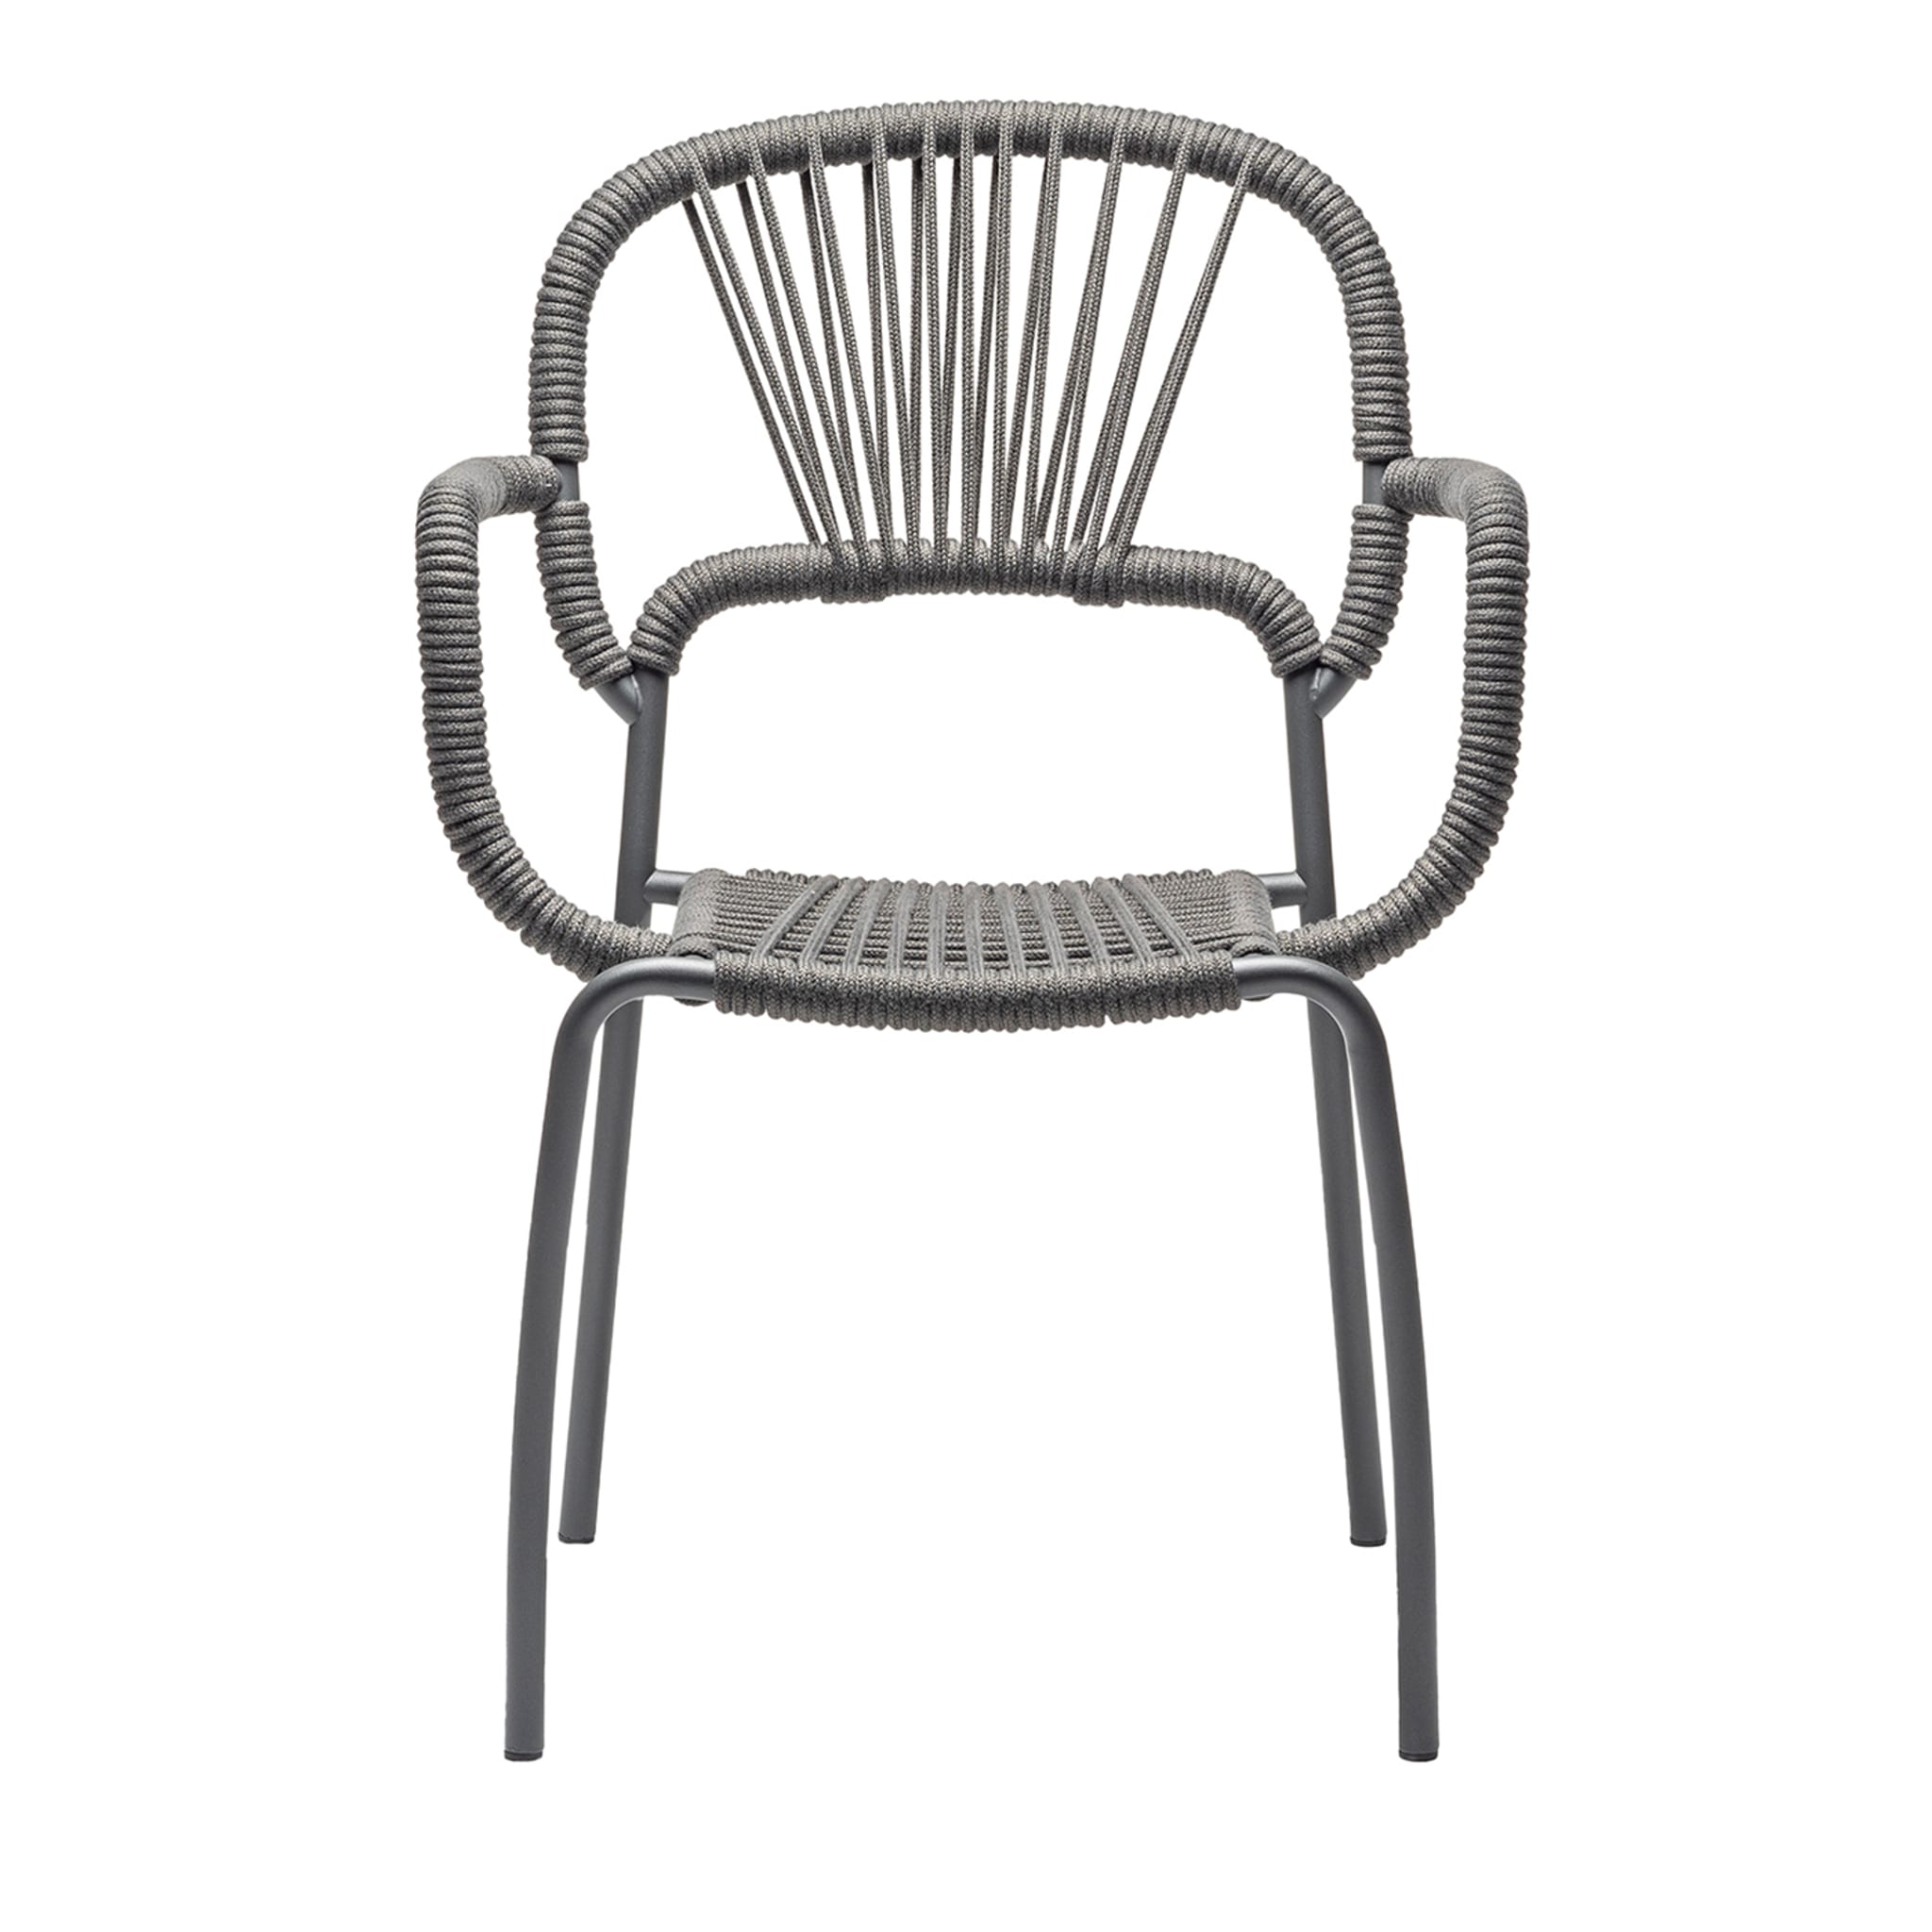 Set of 3 Moyo Chair by Antonio De Marco & Simone Fanciullacci - Main view